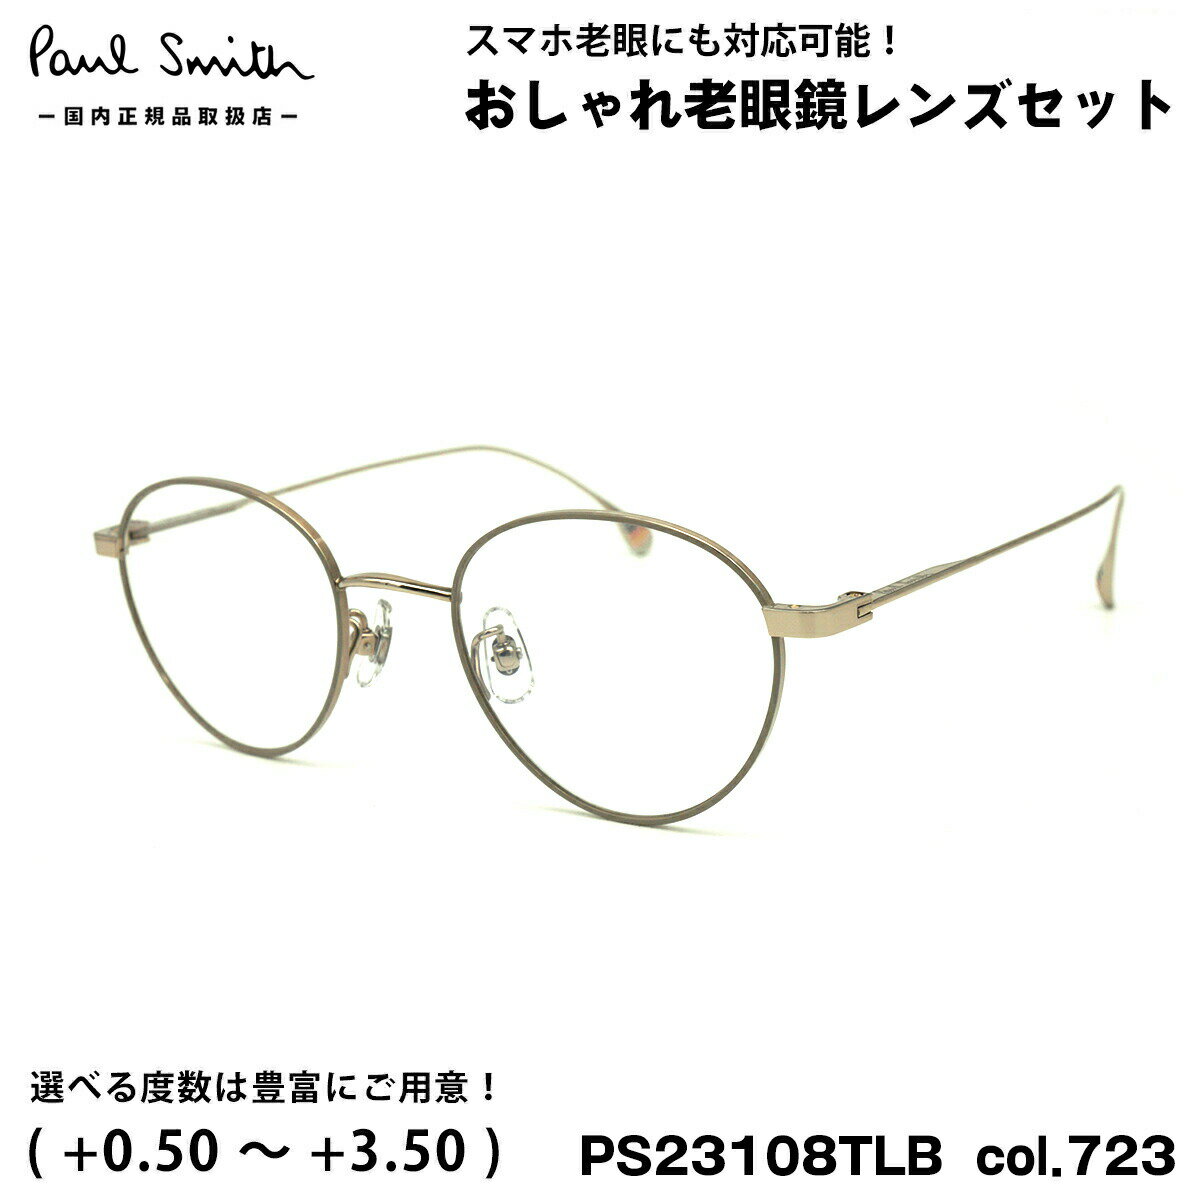 ポールスミス 老眼鏡 PS23108TLB col.723 47mm Paul Smith HARTON 国内正規品 UVカット ブルーライトカット